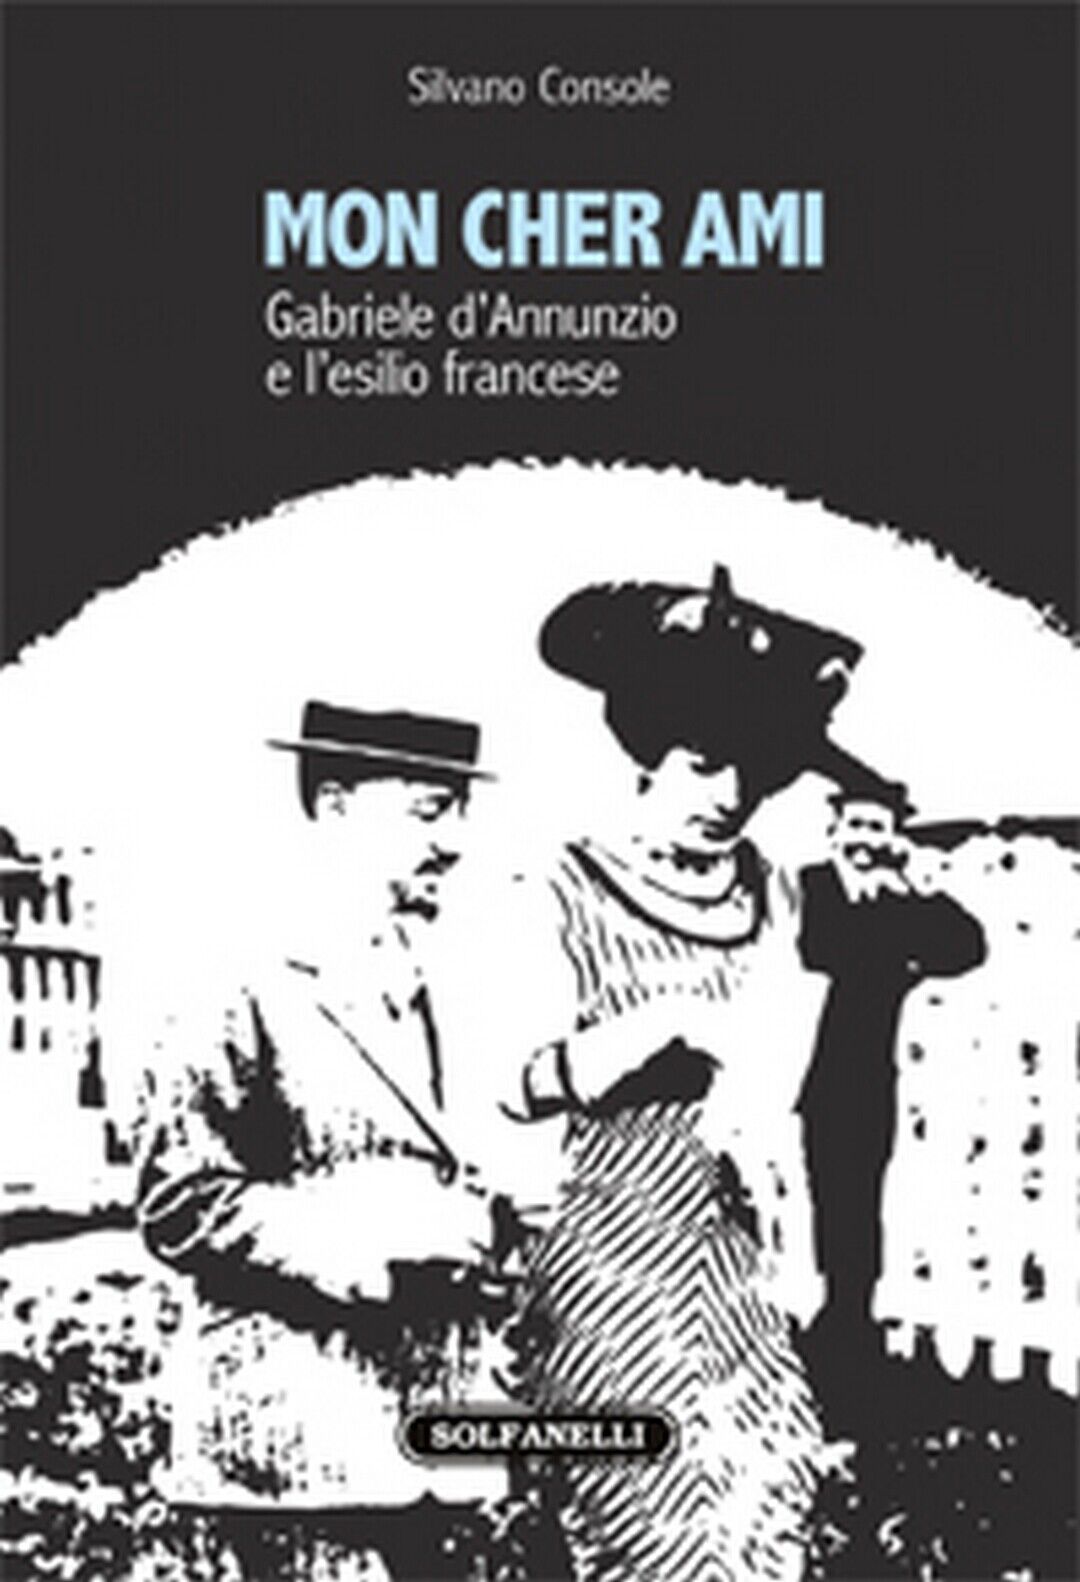 MON CHER AMI Gabriele d'Annunzio e L'esilio francese 1910-1915, Silvano Console libro usato